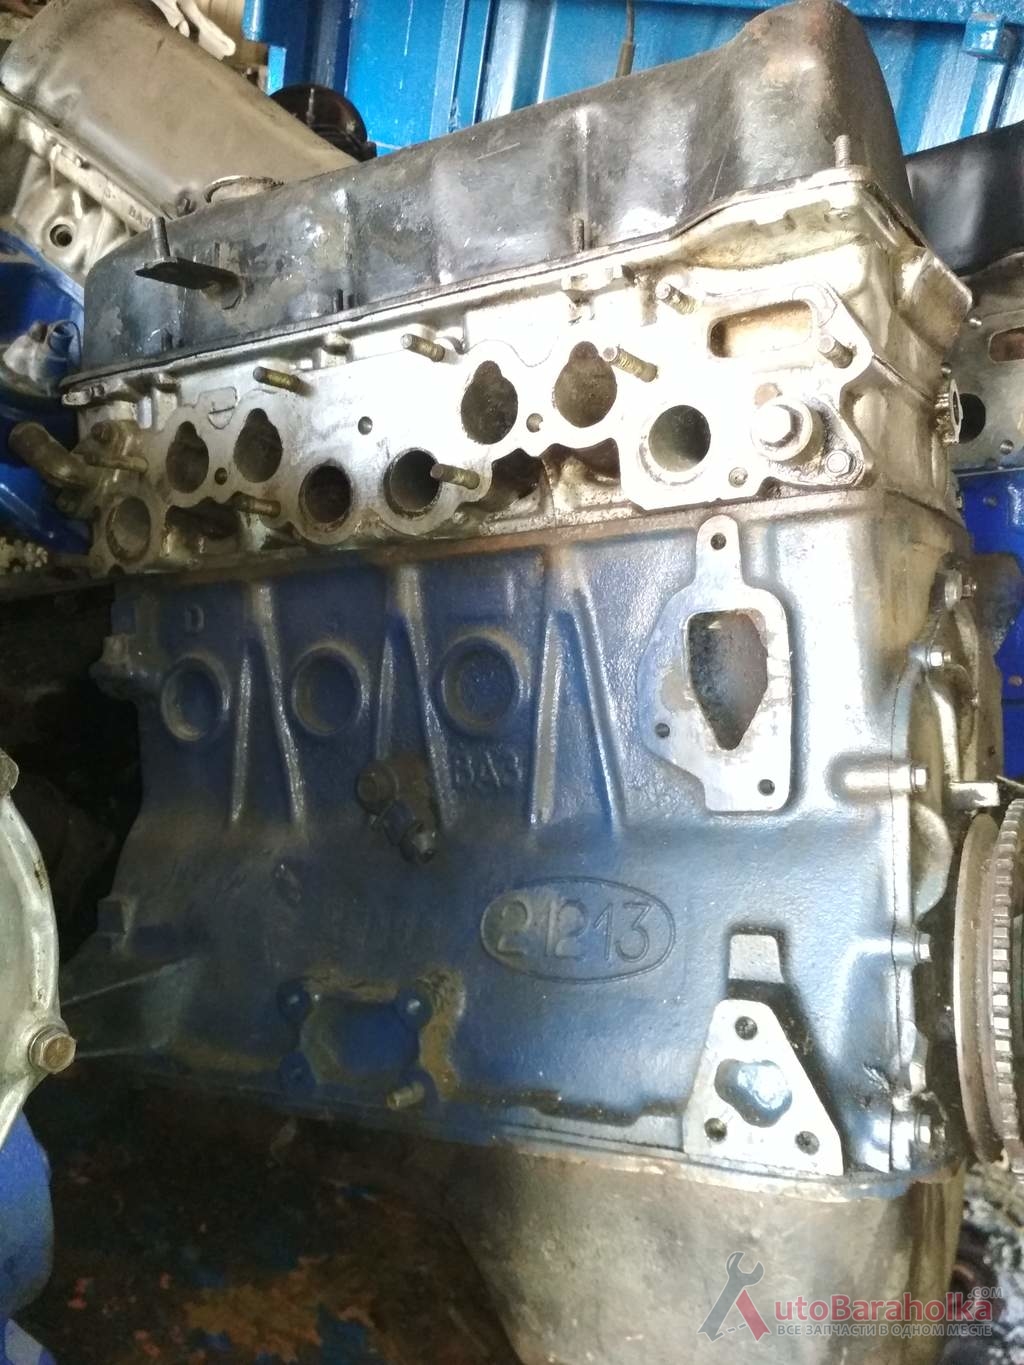 Продам Двигатель ВАЗ 21213 1.7 нива тайга из Польши. малый пробег. отличное сост. проверенный. Гарантия Херсон